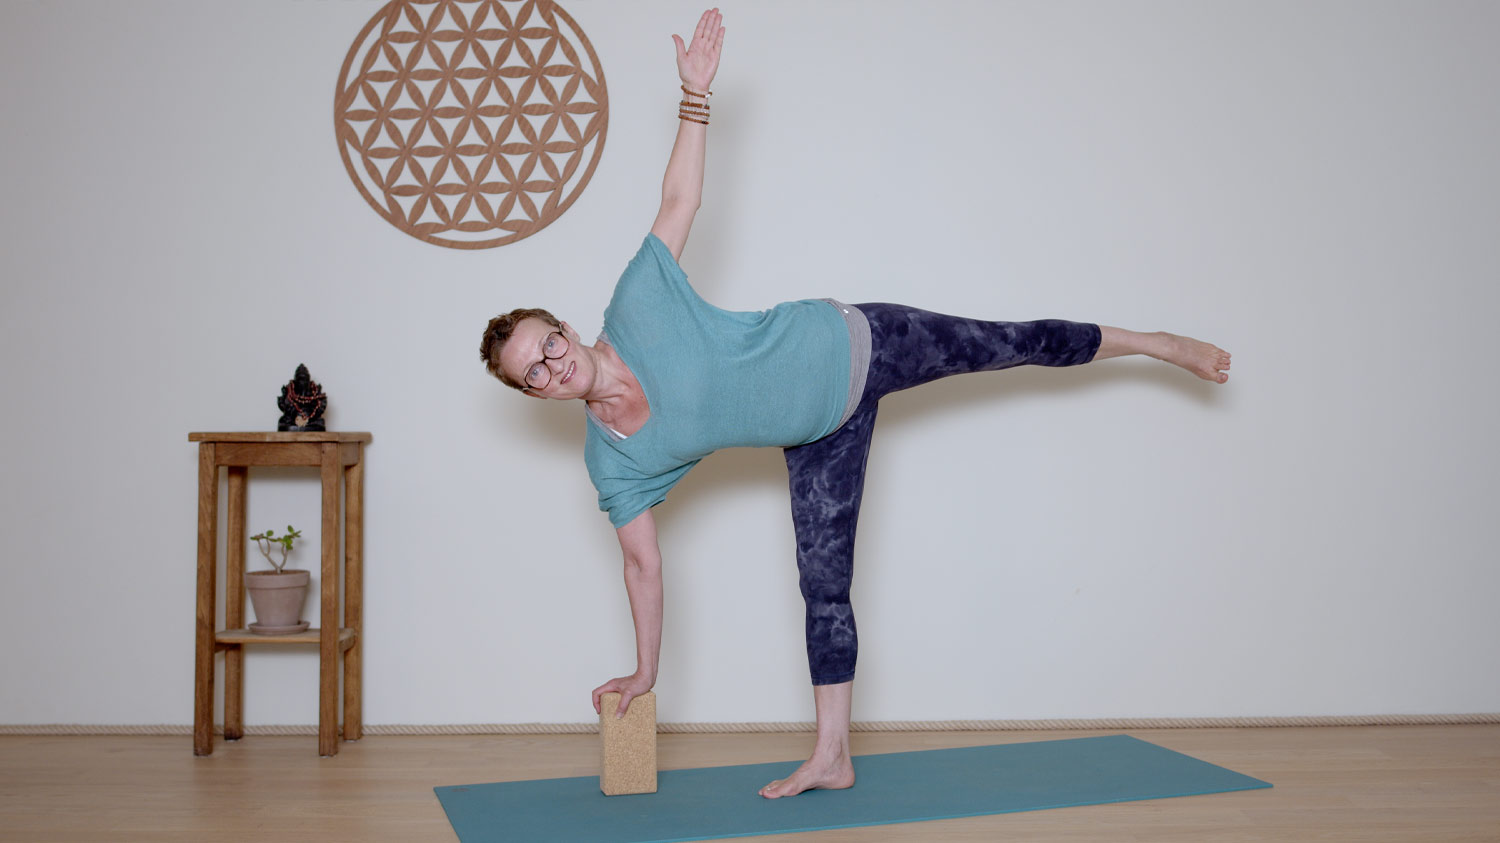 Séance complète - 45 min - Corps d'énergie | Cours de yoga en ligne avec Delphine Denis | Hatha Yoga dynamique, Méditation, Pranayama